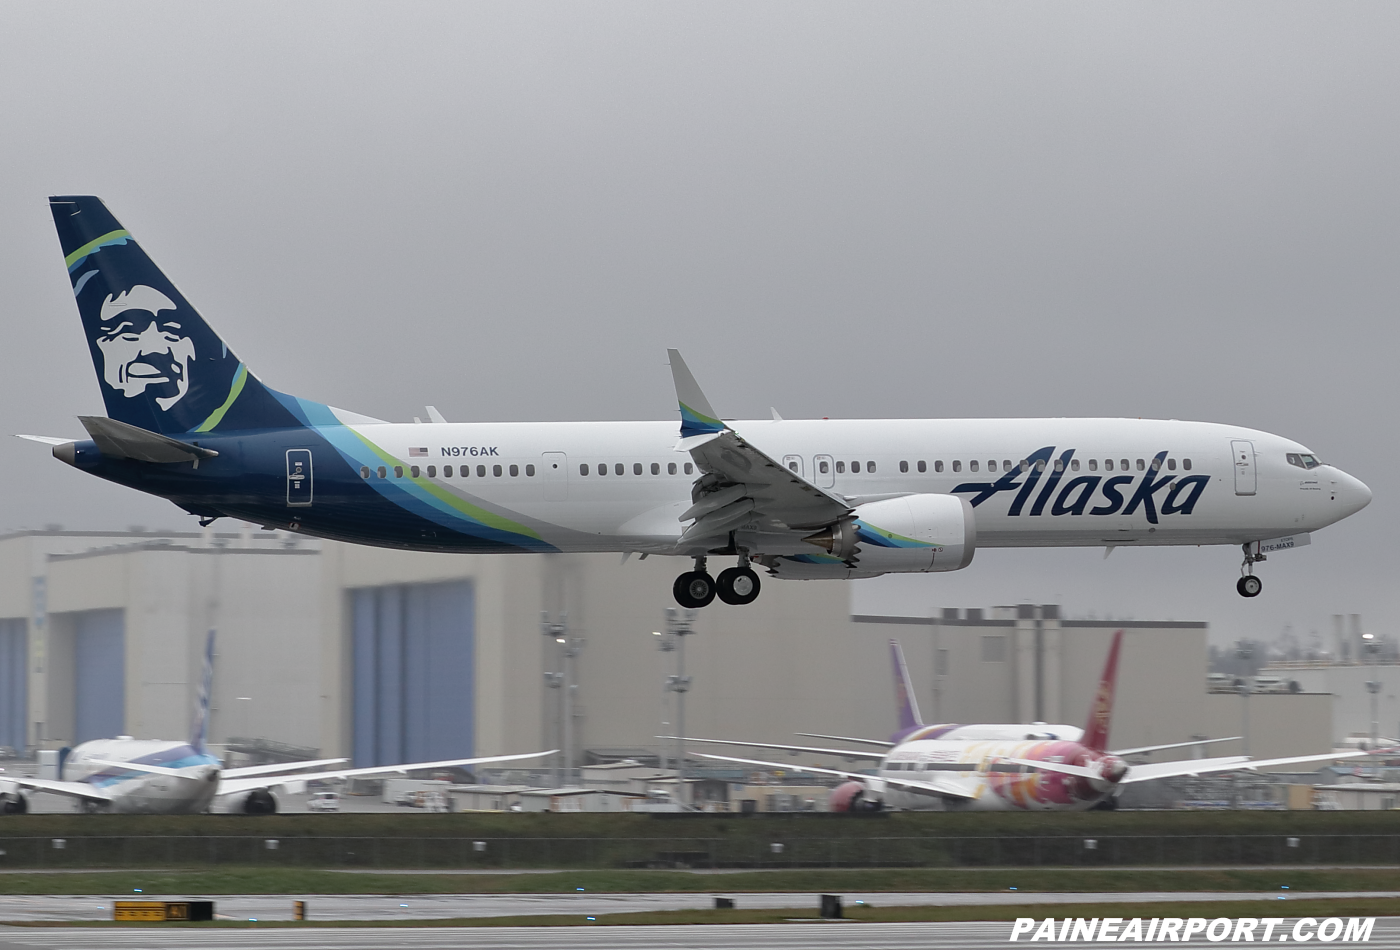 Alaska Airlines 737 N976AK at KPAE Paine Field